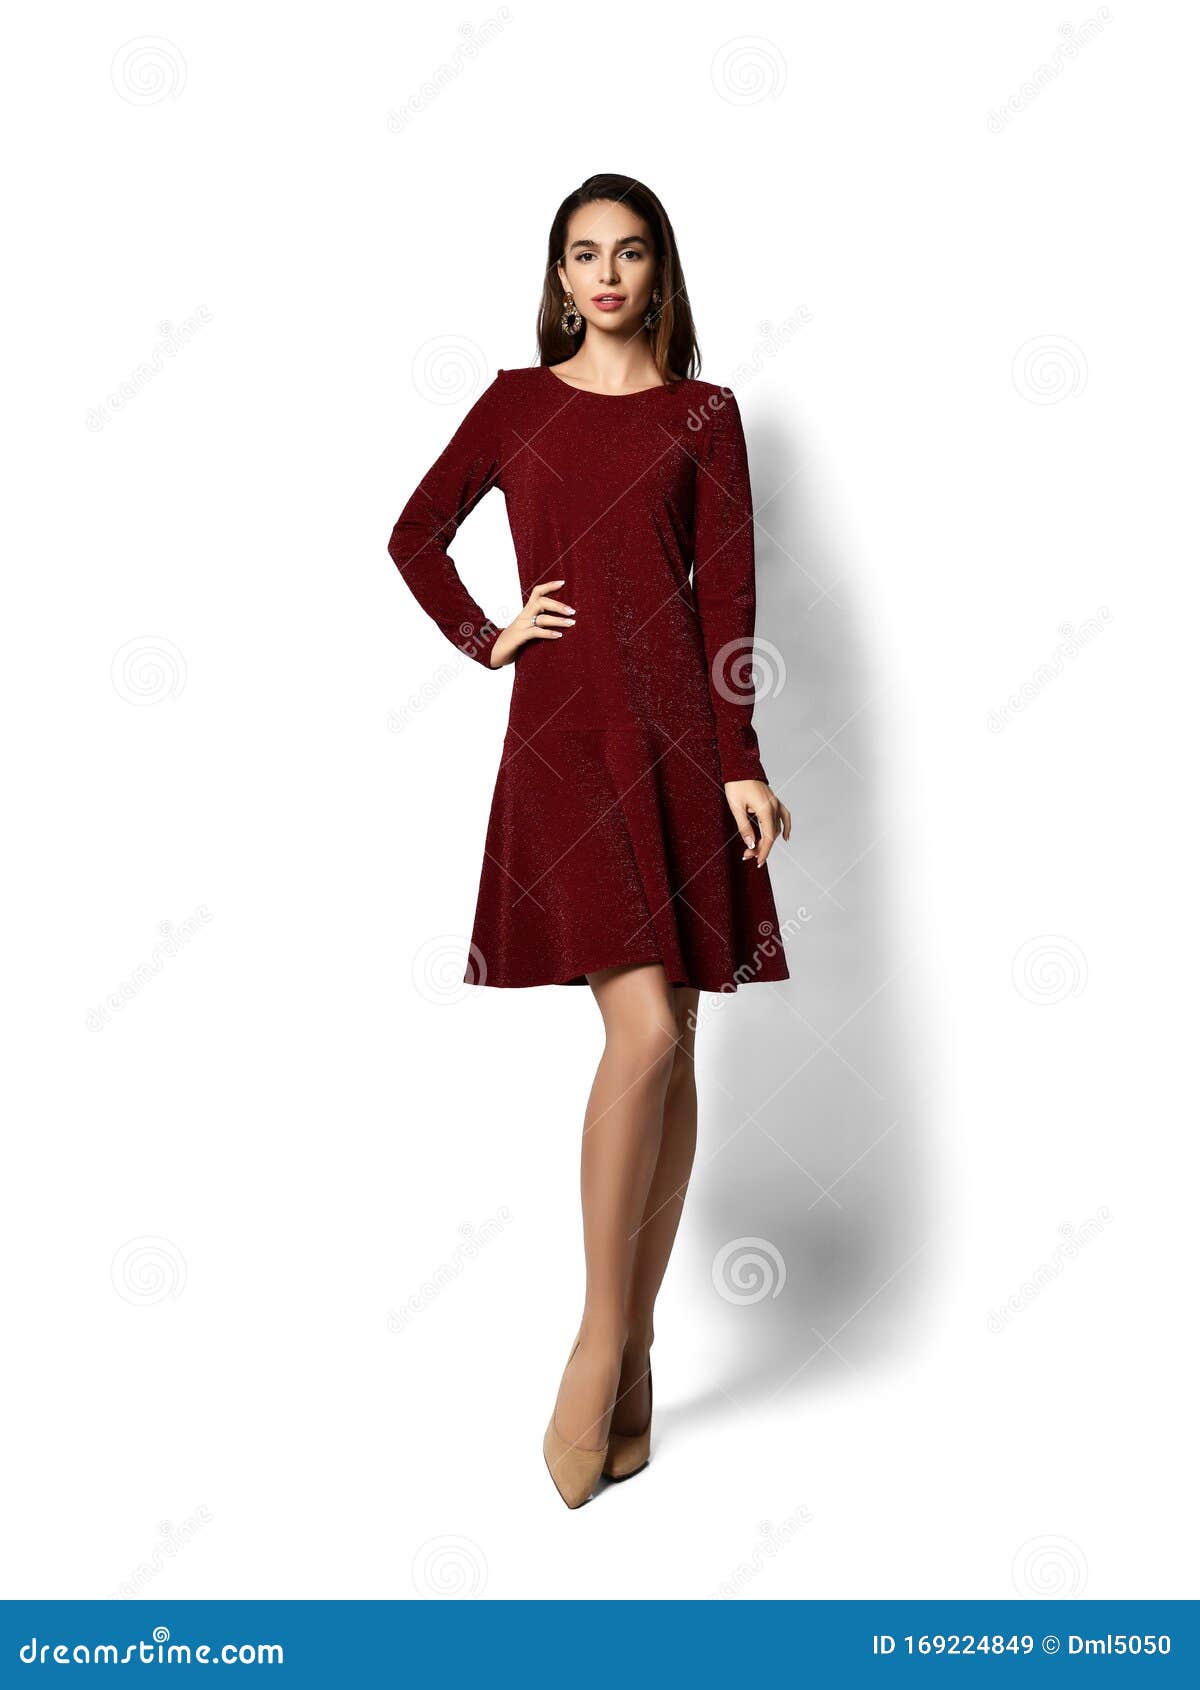 Joven Mujer Hermosa Posando En Nueva Forma Informal Oscuro Morado Vestido Rojo De Invierno Sonriendo Caminando Imagen de archivo Imagen de modelo, atractivo: 169224849